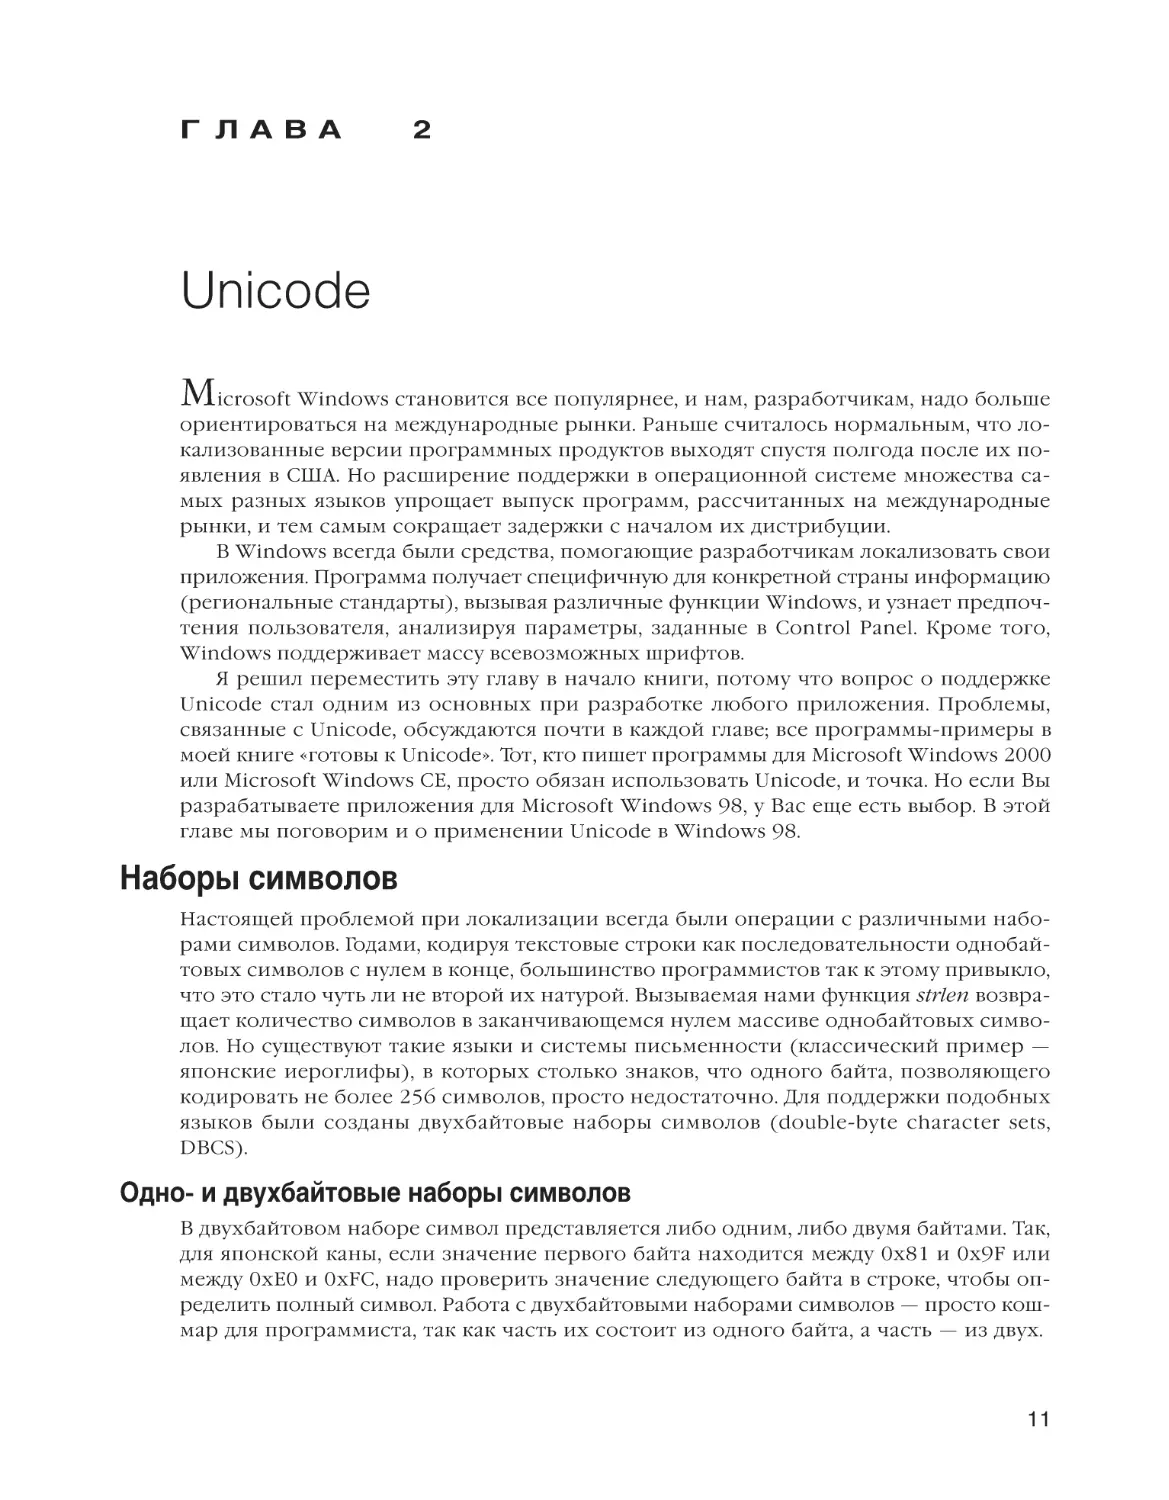 Глава 2. Unicode
Наборы символов
Одно- и двухбайтовые наборы символов